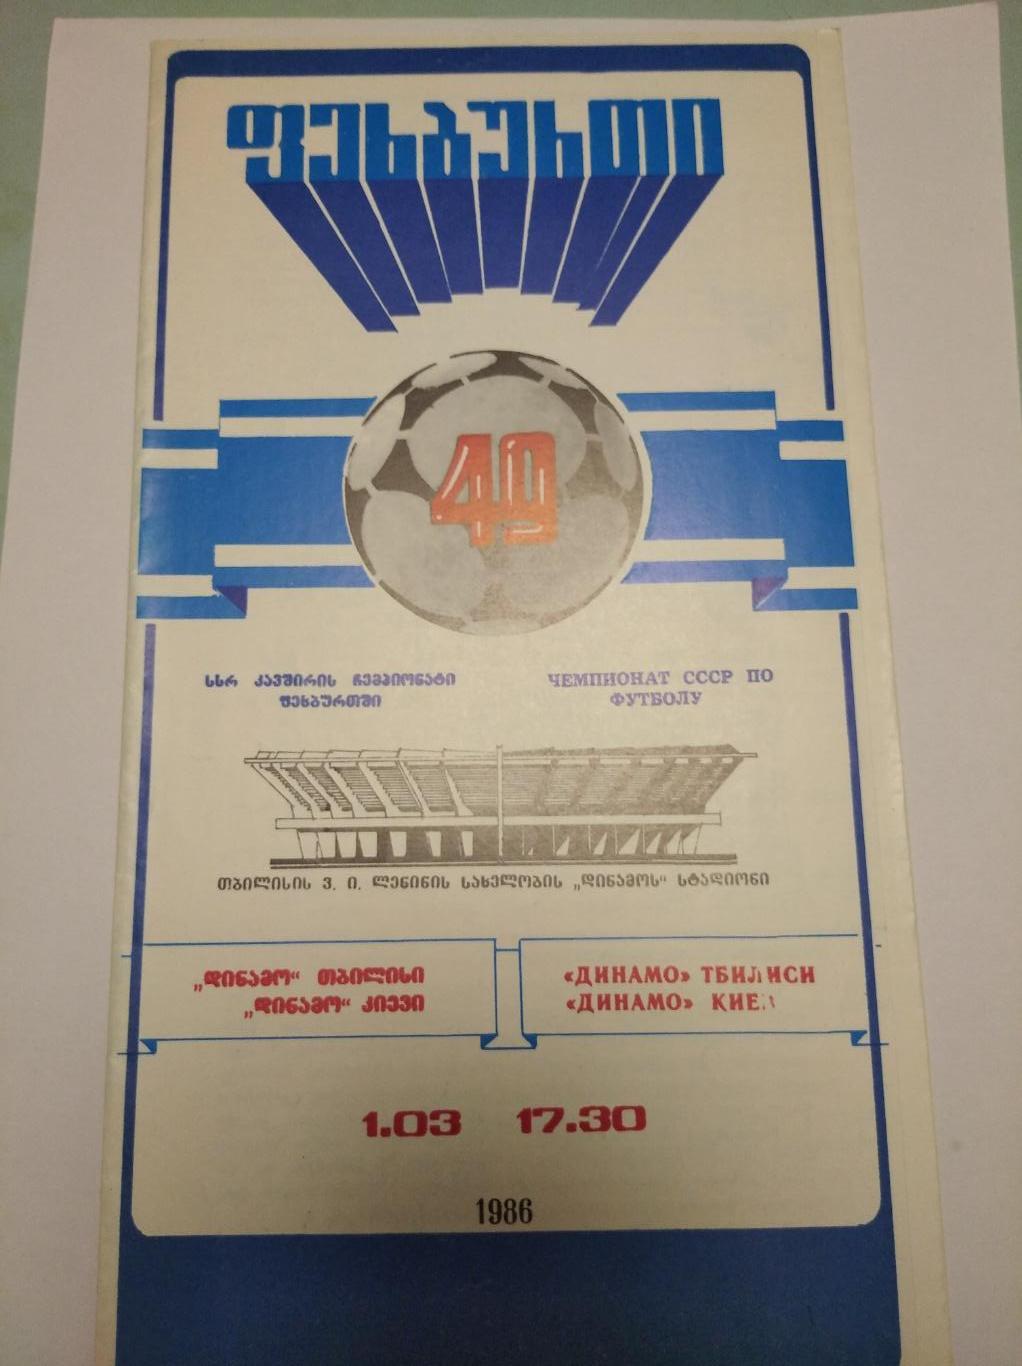 Динамо Тбилиси - Динамо Киев. 01.04.1986